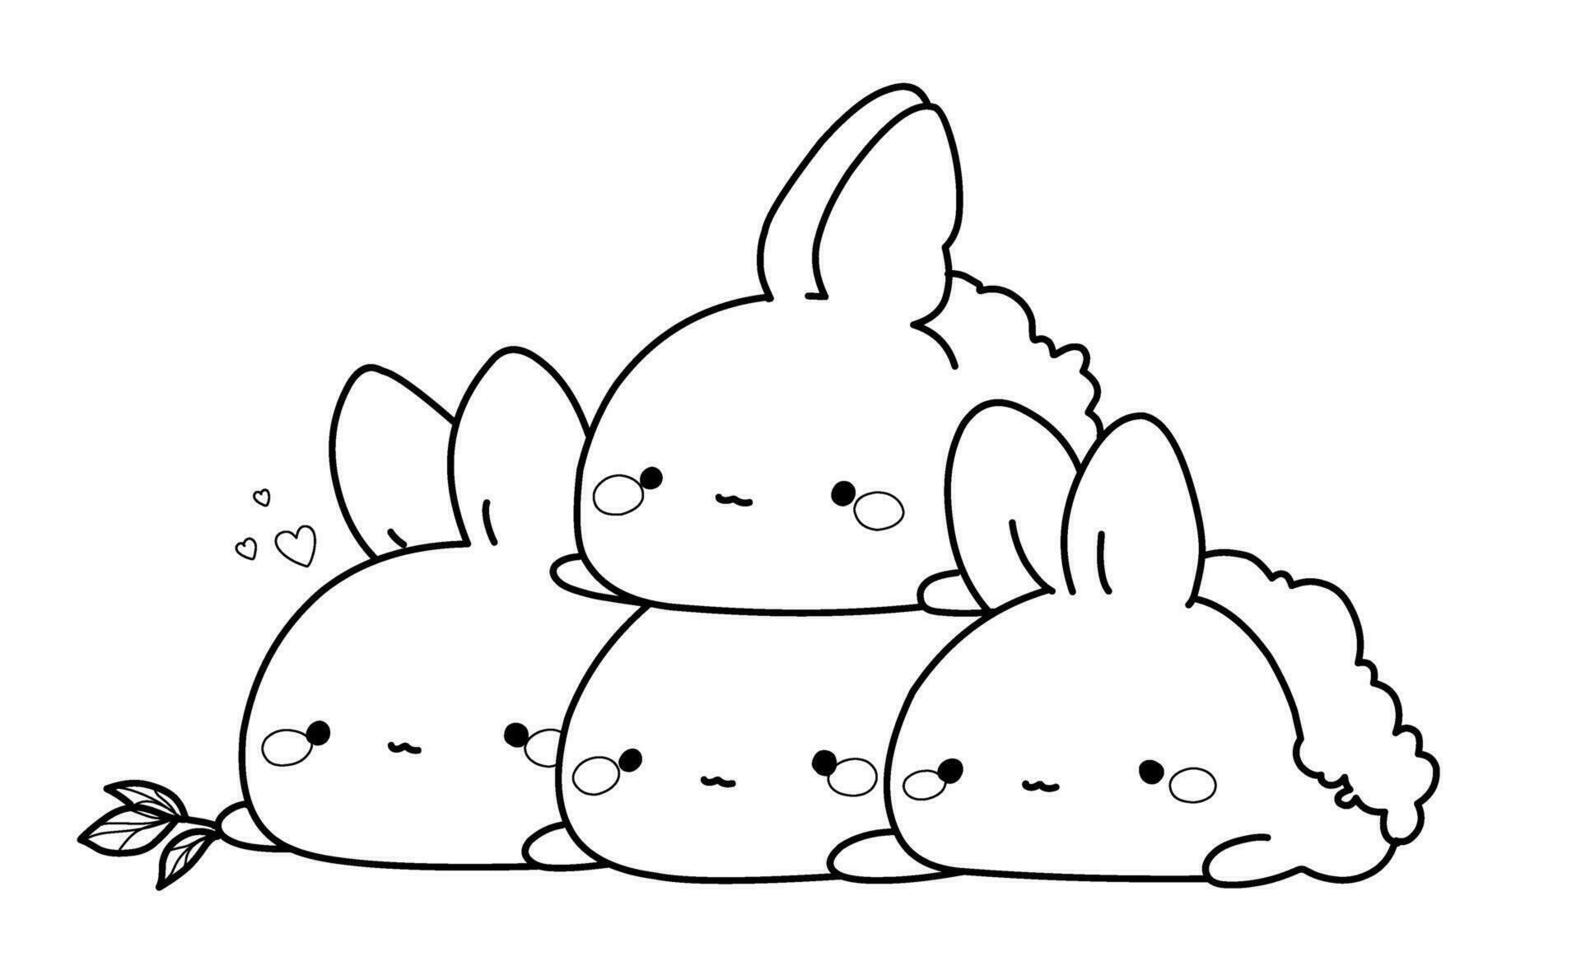 konijnen kleur bladzijde in kawaii stijl, vector illustratie in Japans stijl